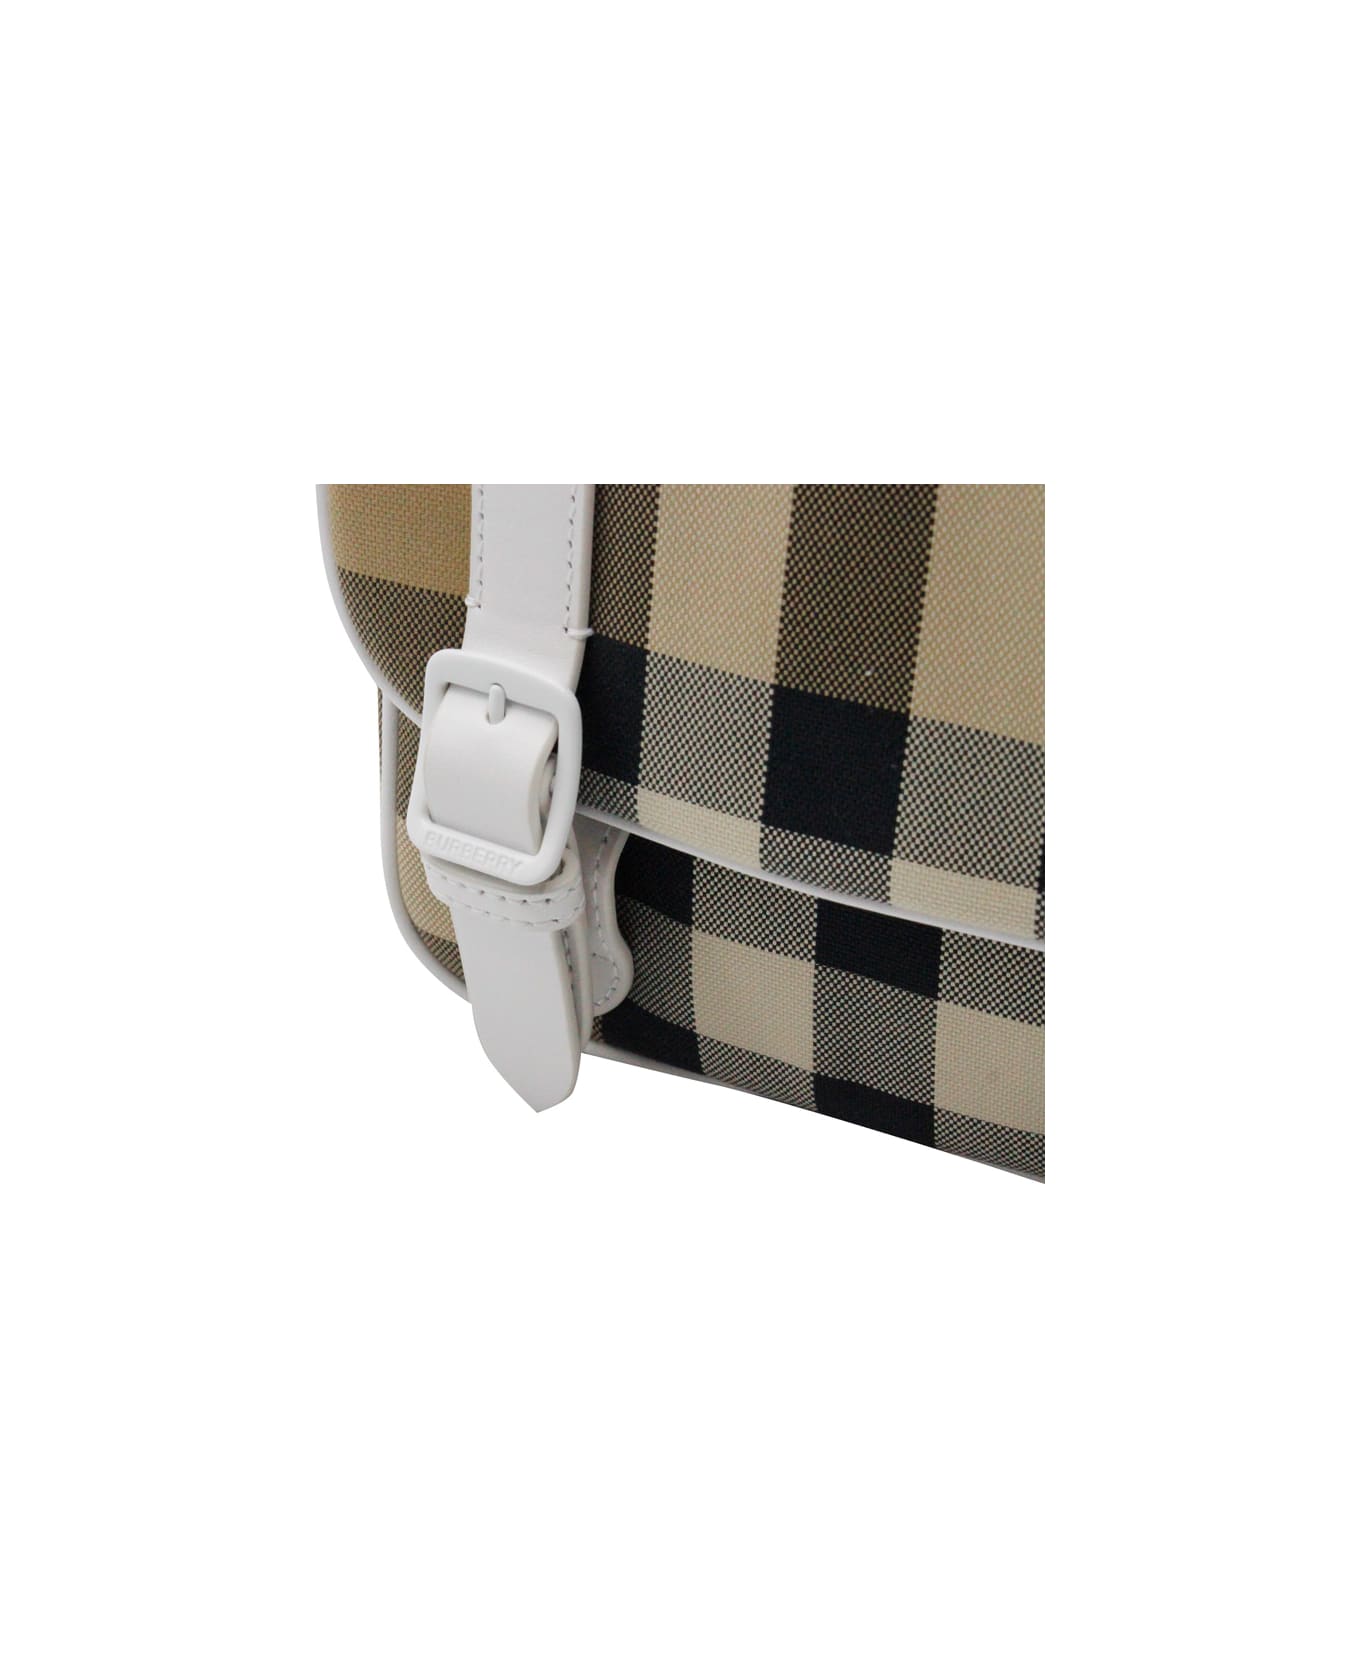 Burberry Fabric Bag With Adjustable Shoulder Strap, - Beige